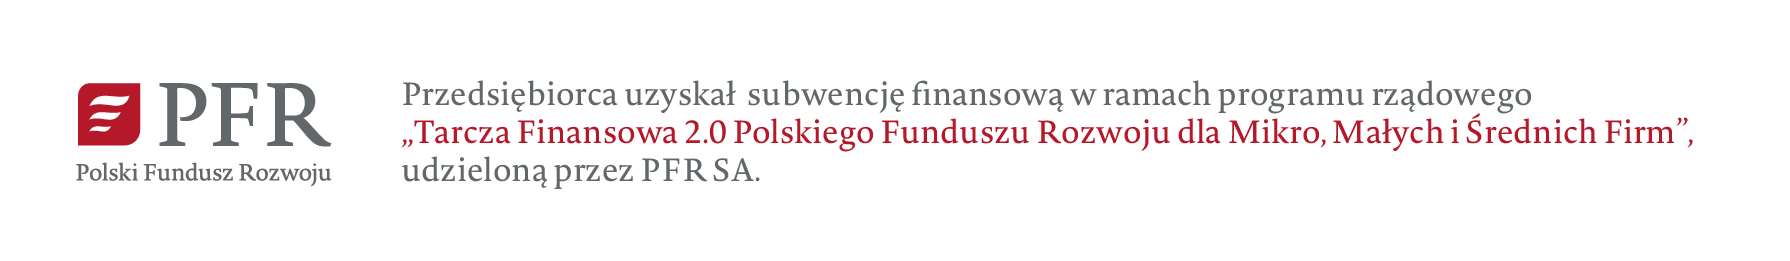 Infografika dotycząca subwencji finansowej udzielonej przez Polski Fundusz Rozwoju w ramach Tarczy 2.0